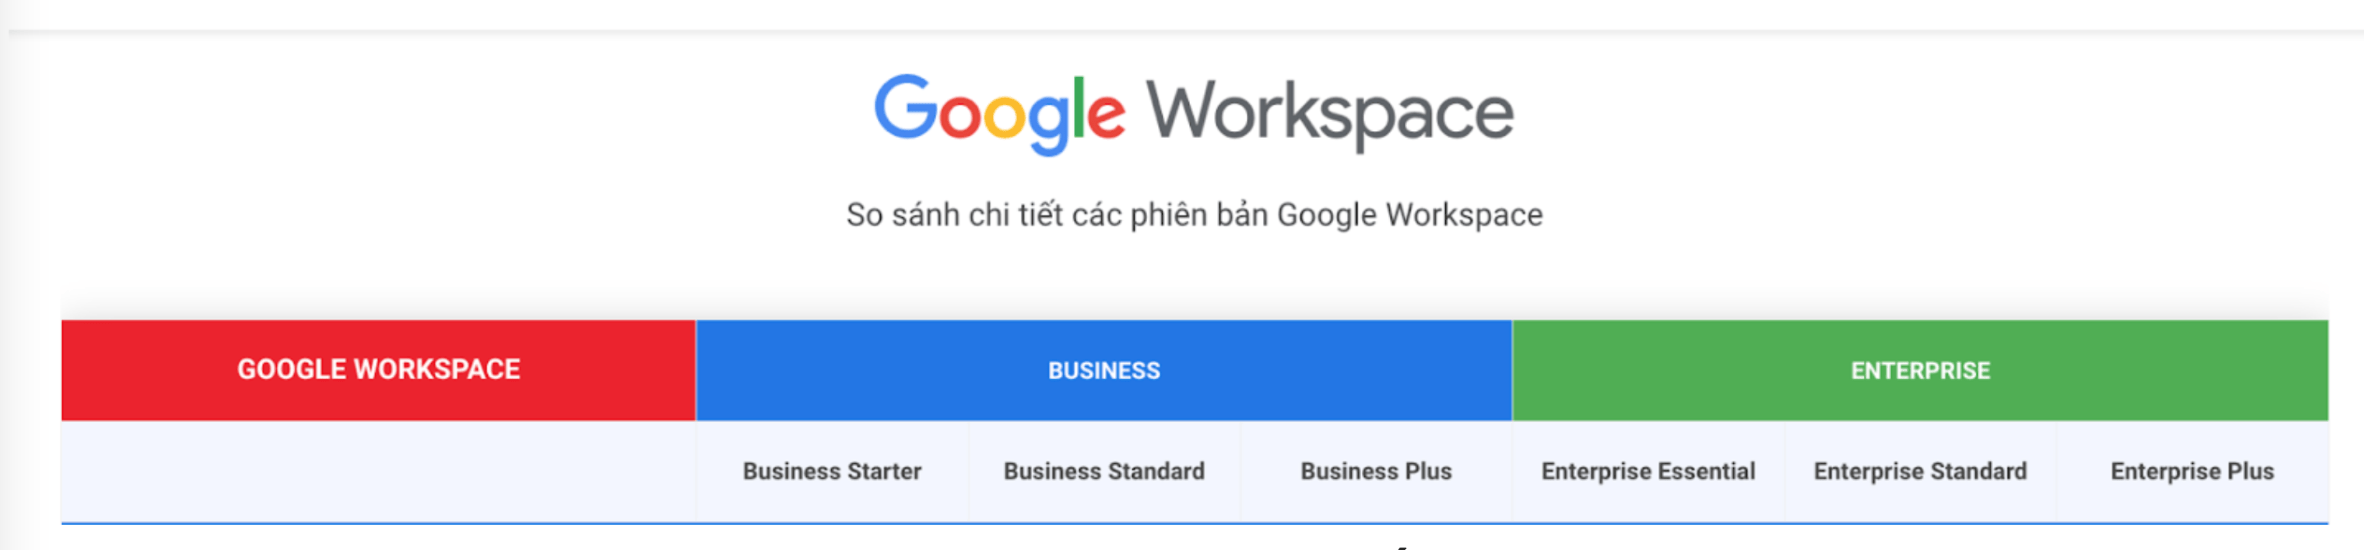 Các phiên bản Google Workspace hiện Gimasys cung cấp